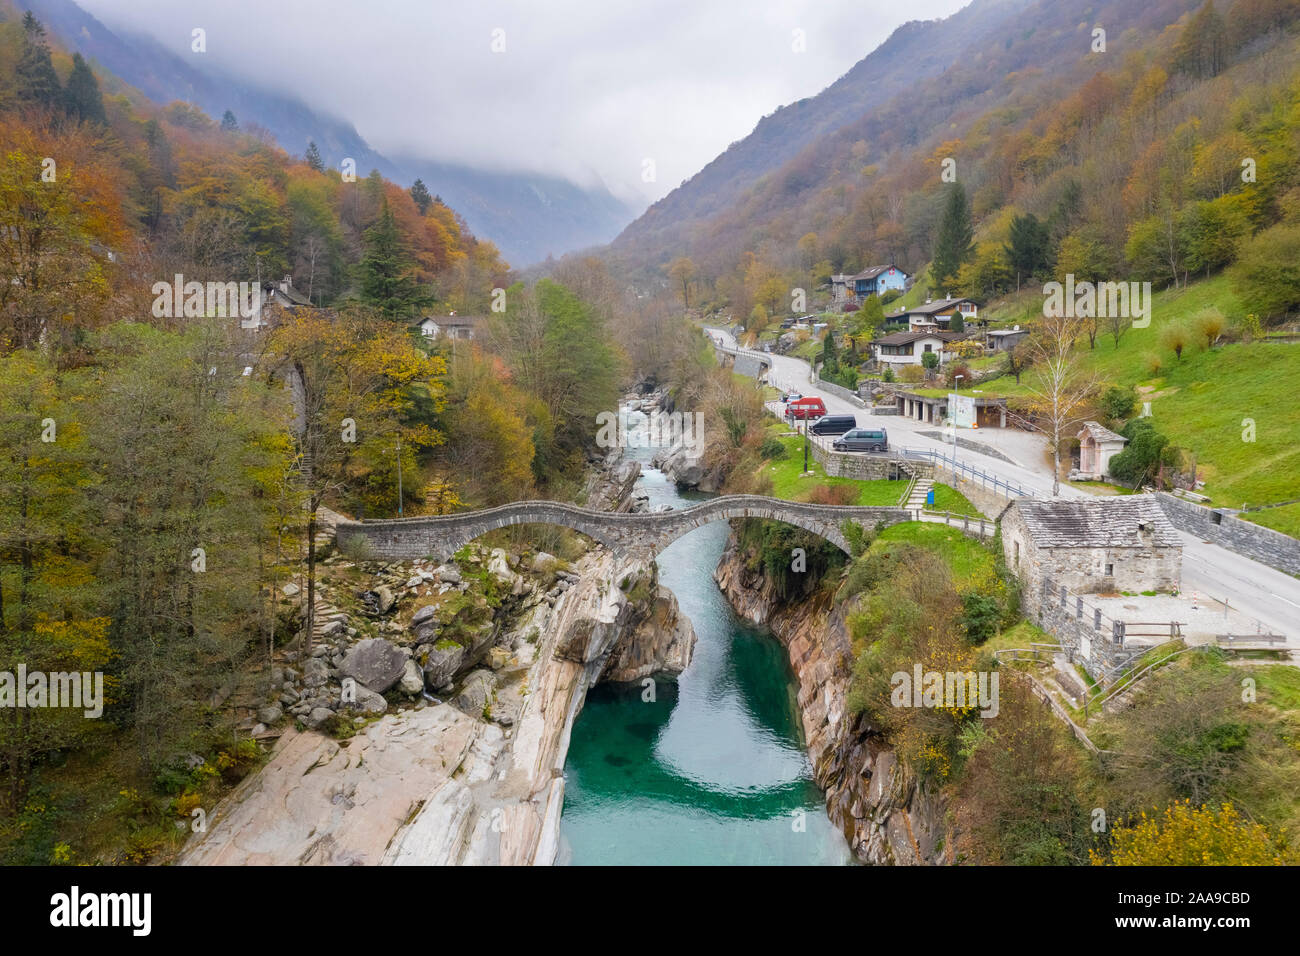 Aerial view of the 'Ponte dei Salti', river Verzasca and the town of Lavertezzo, Valle Verzasca, Canton Ticino, Switzerland. Stock Photo